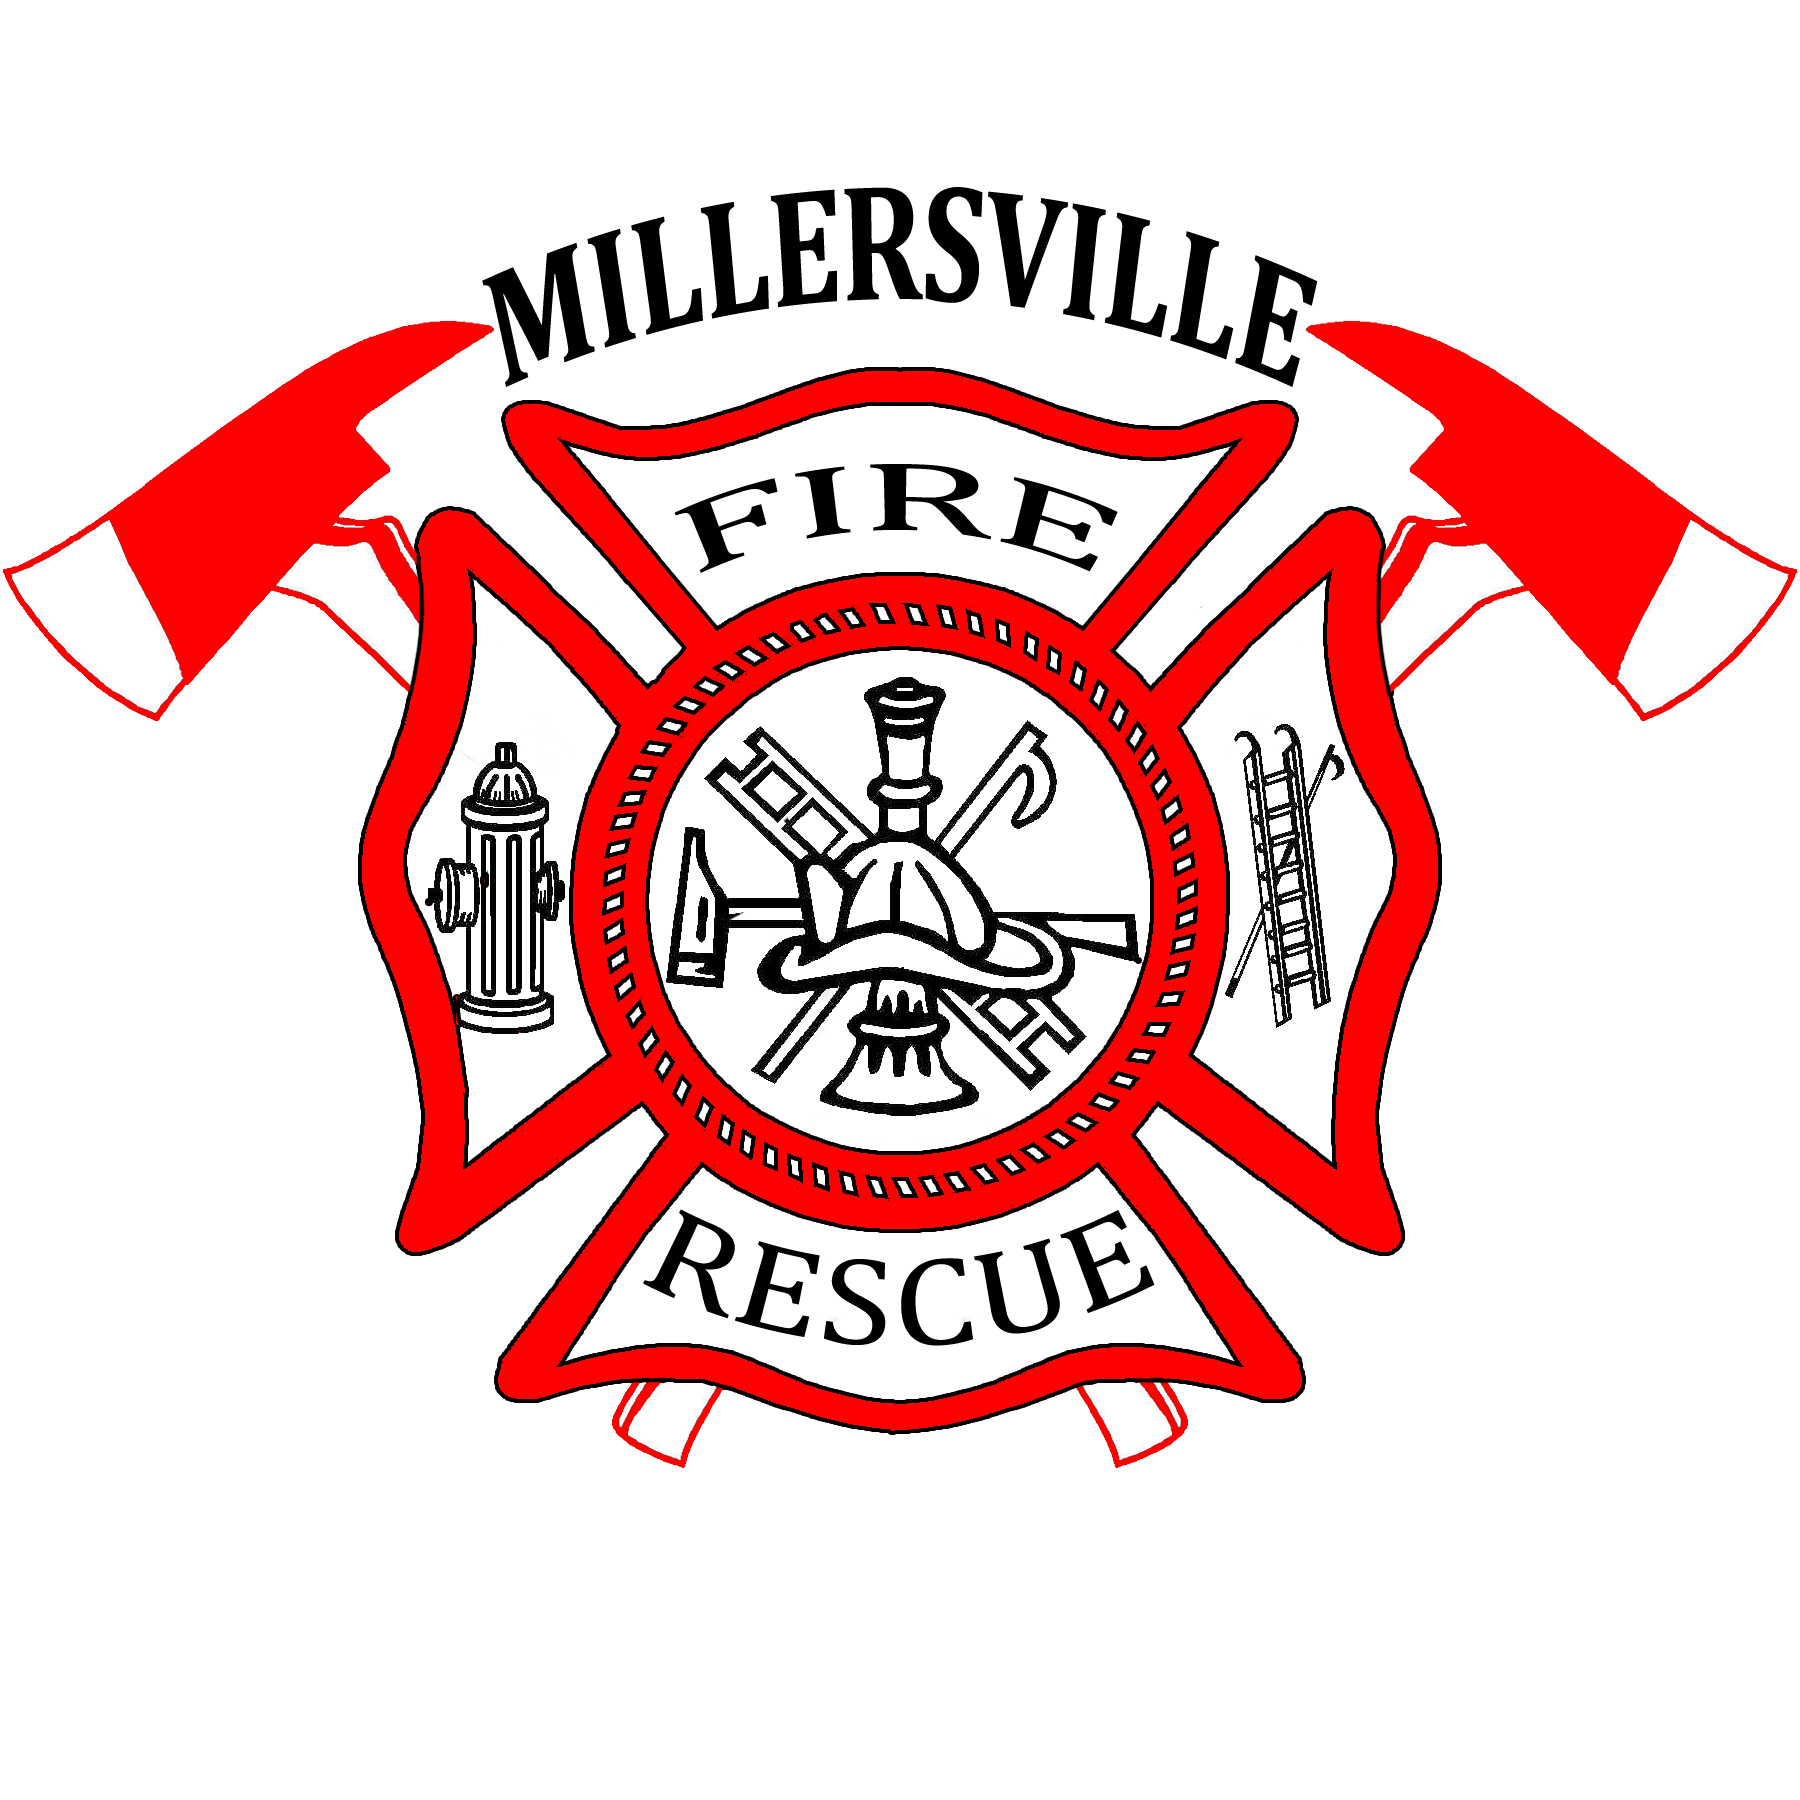 Fire department logo clipart